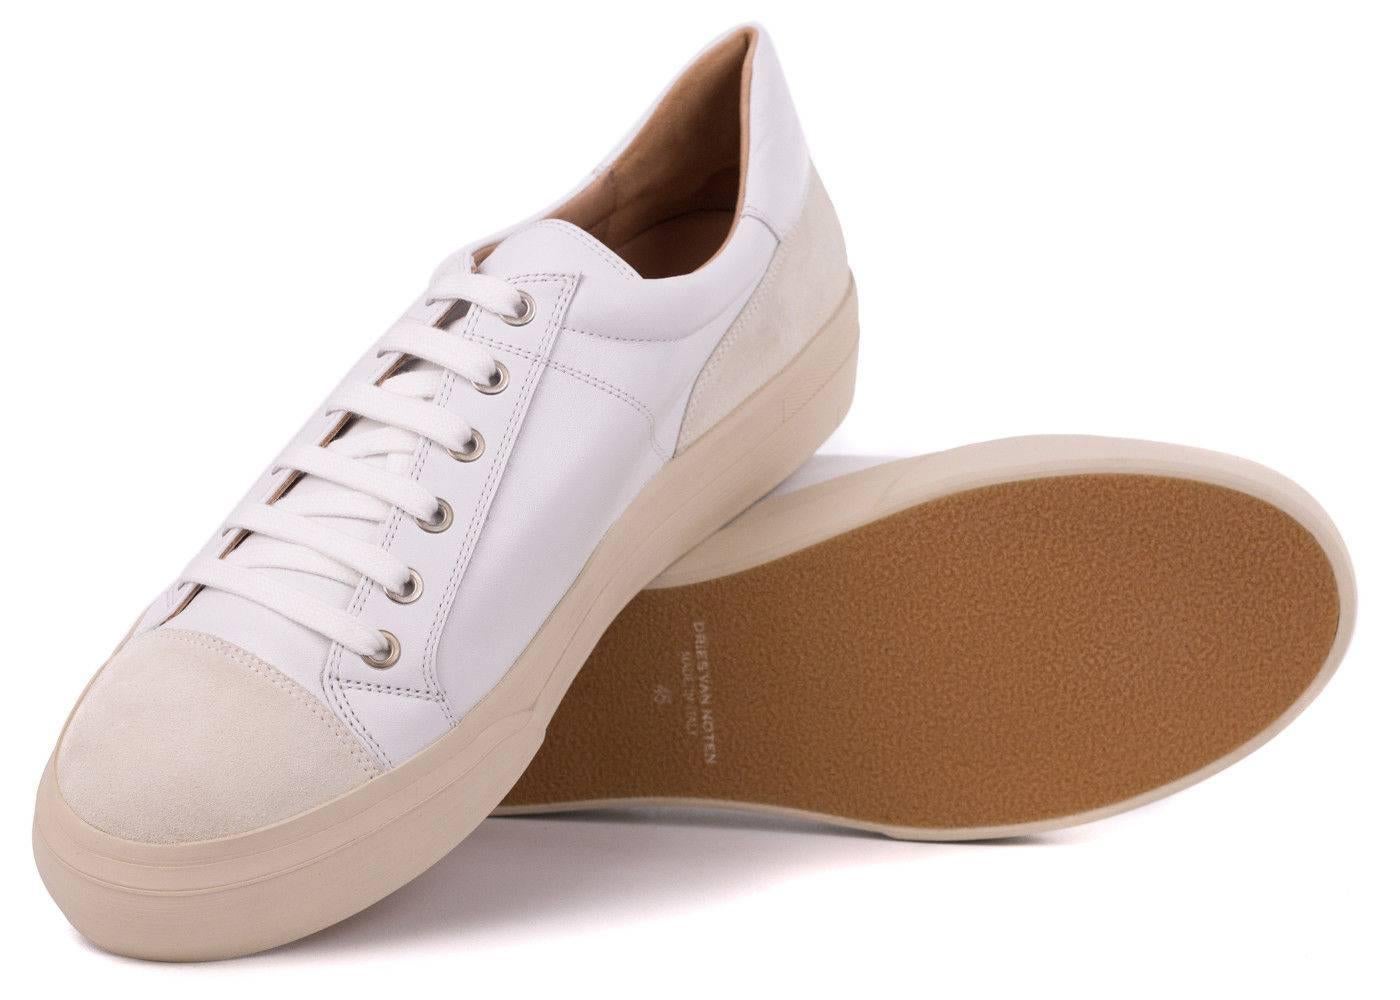 Dries Van Noten Men's White Leather Low Top Cap Toe Sneakers For Sale 2